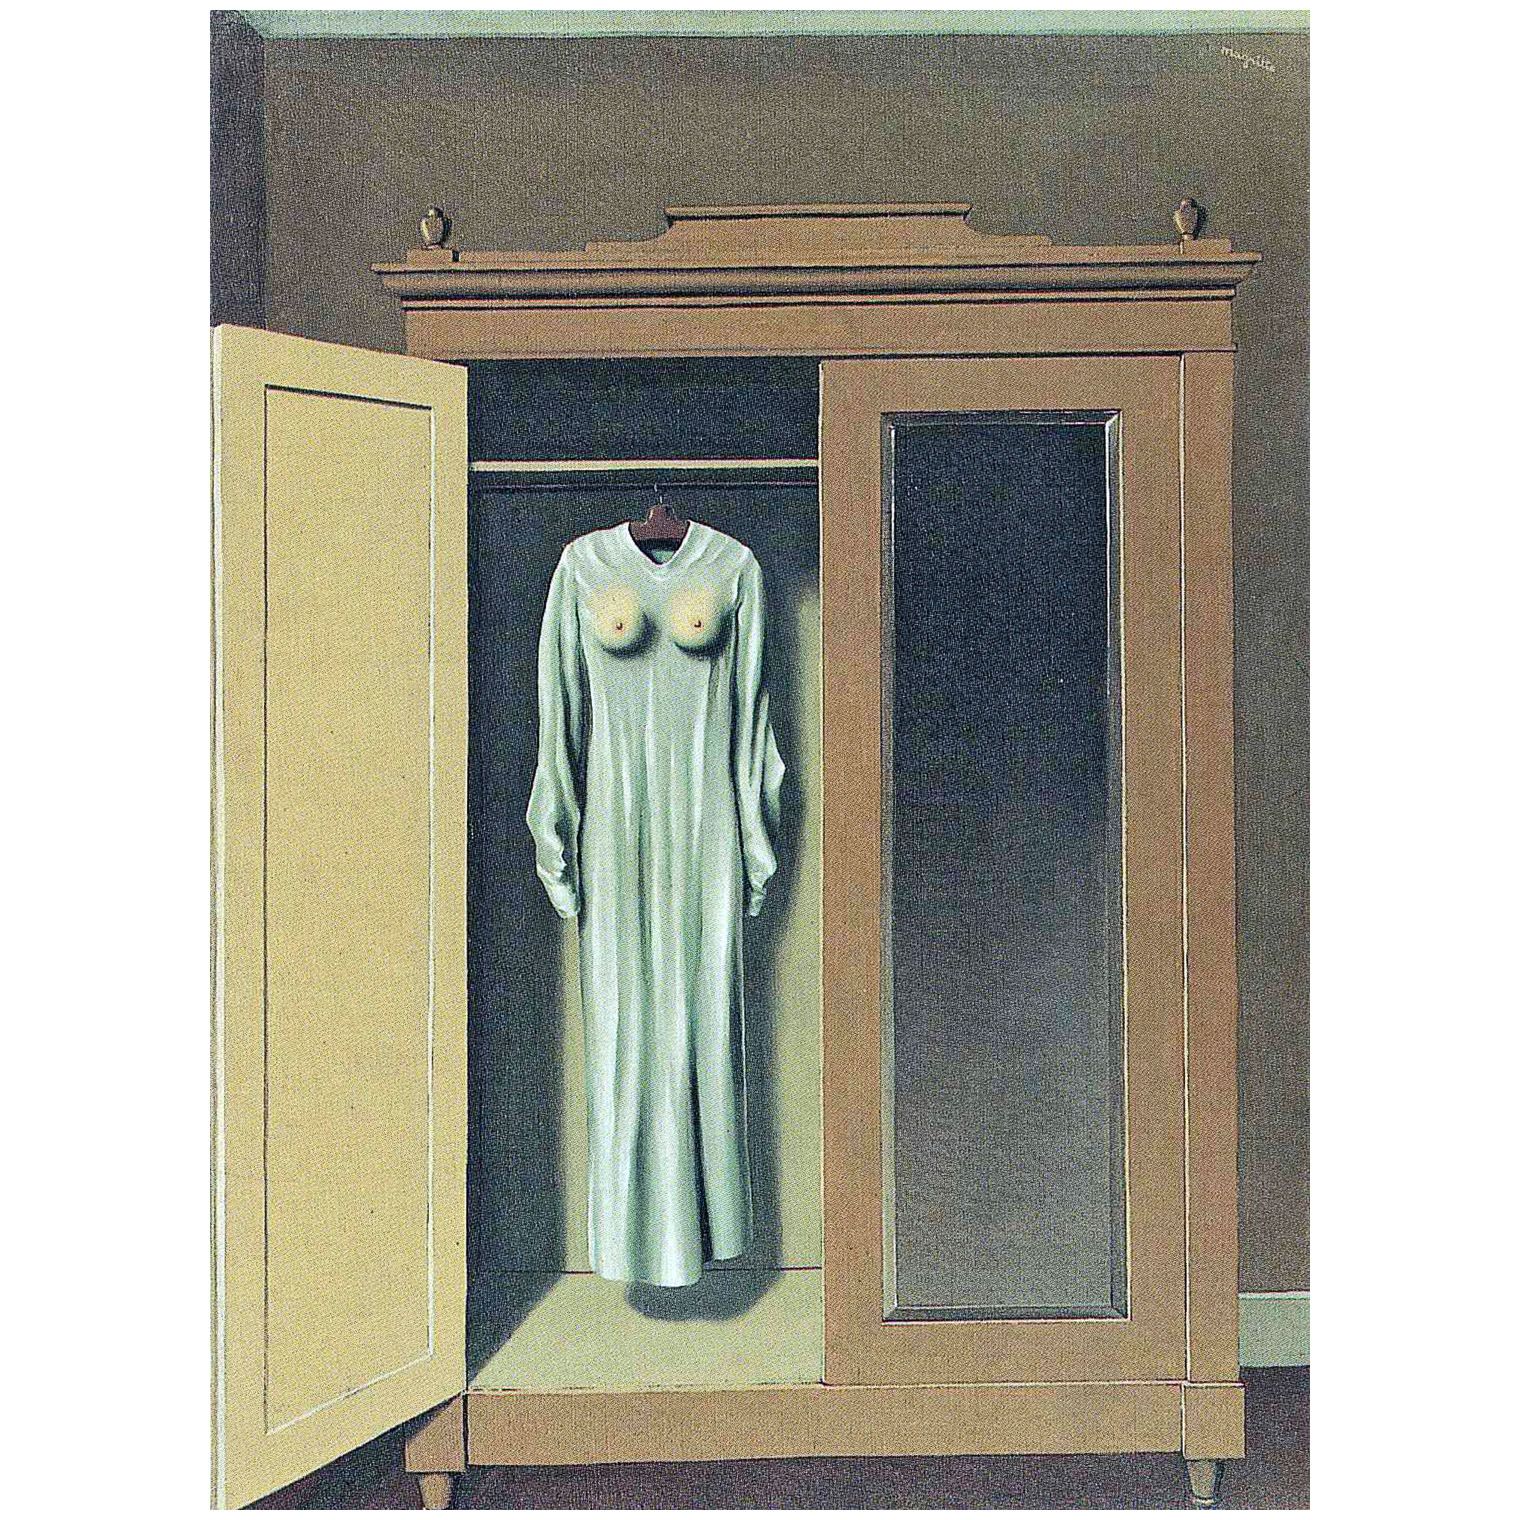 Rene Magritte. Hommage a Mack Sennett. 1934. K20 Dusseldorf